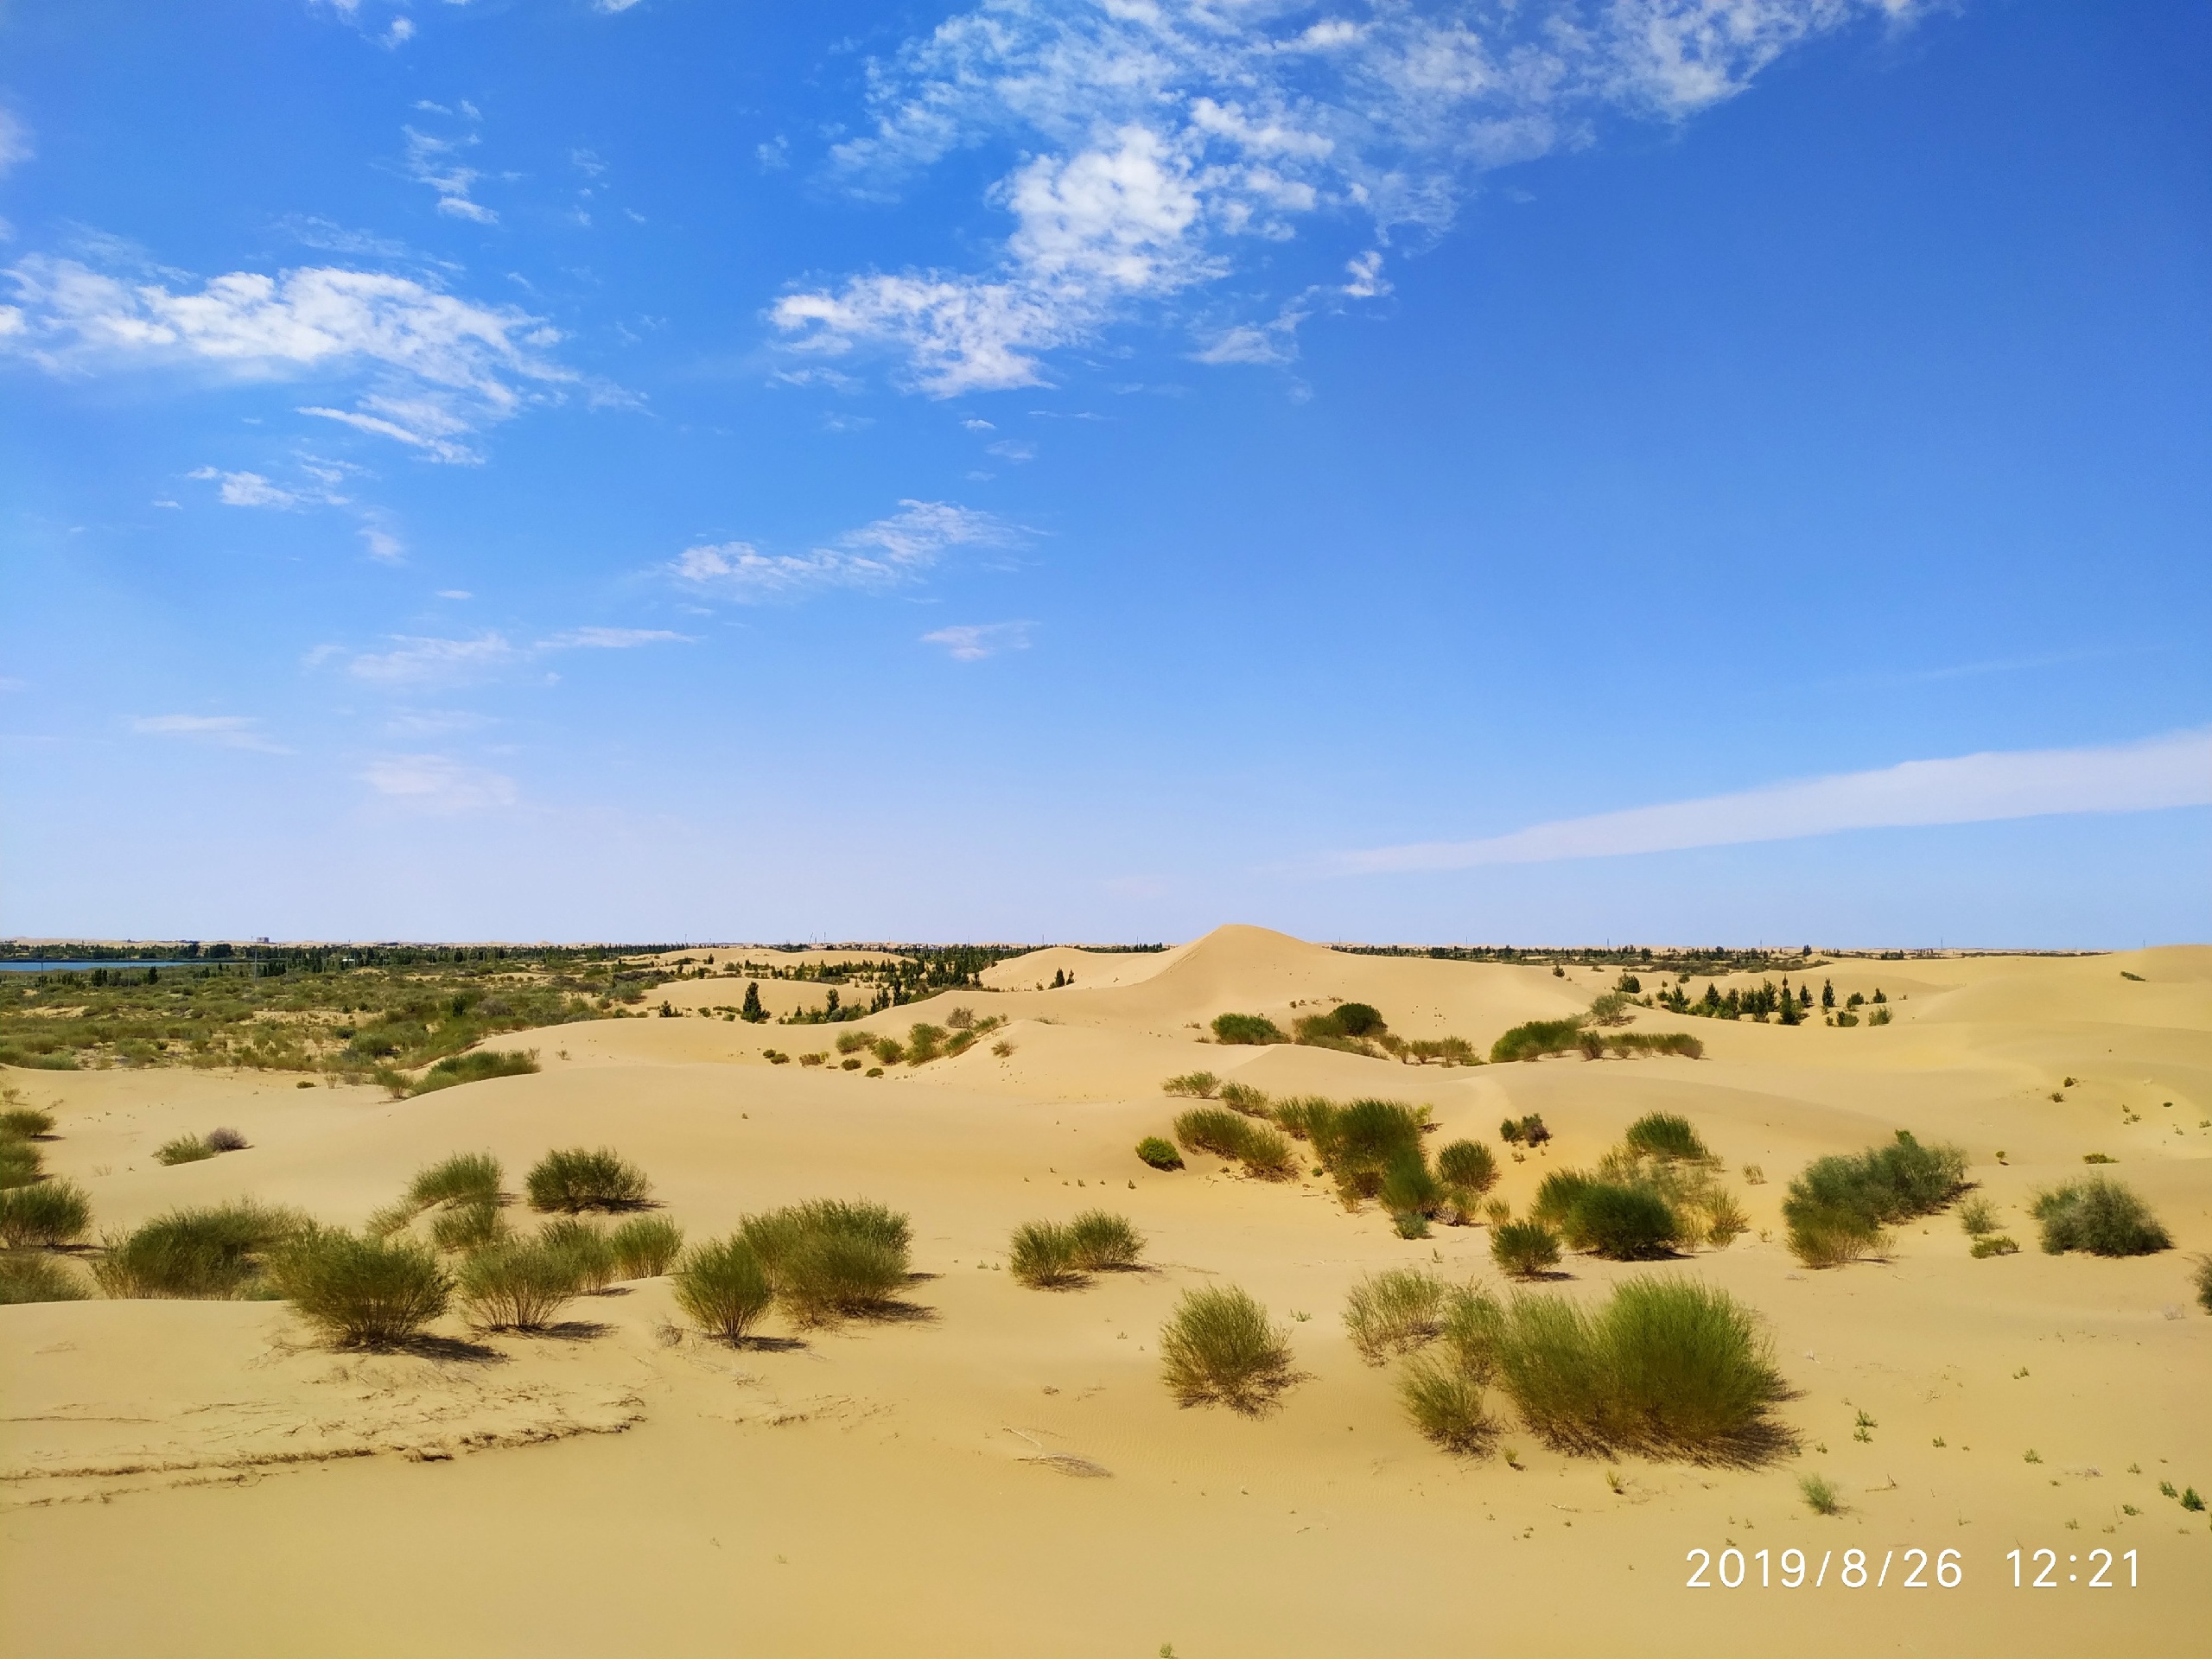 库布其国家沙漠公园（七星湖景区）好玩吗？七星湖沙漠生态旅游区图片大全